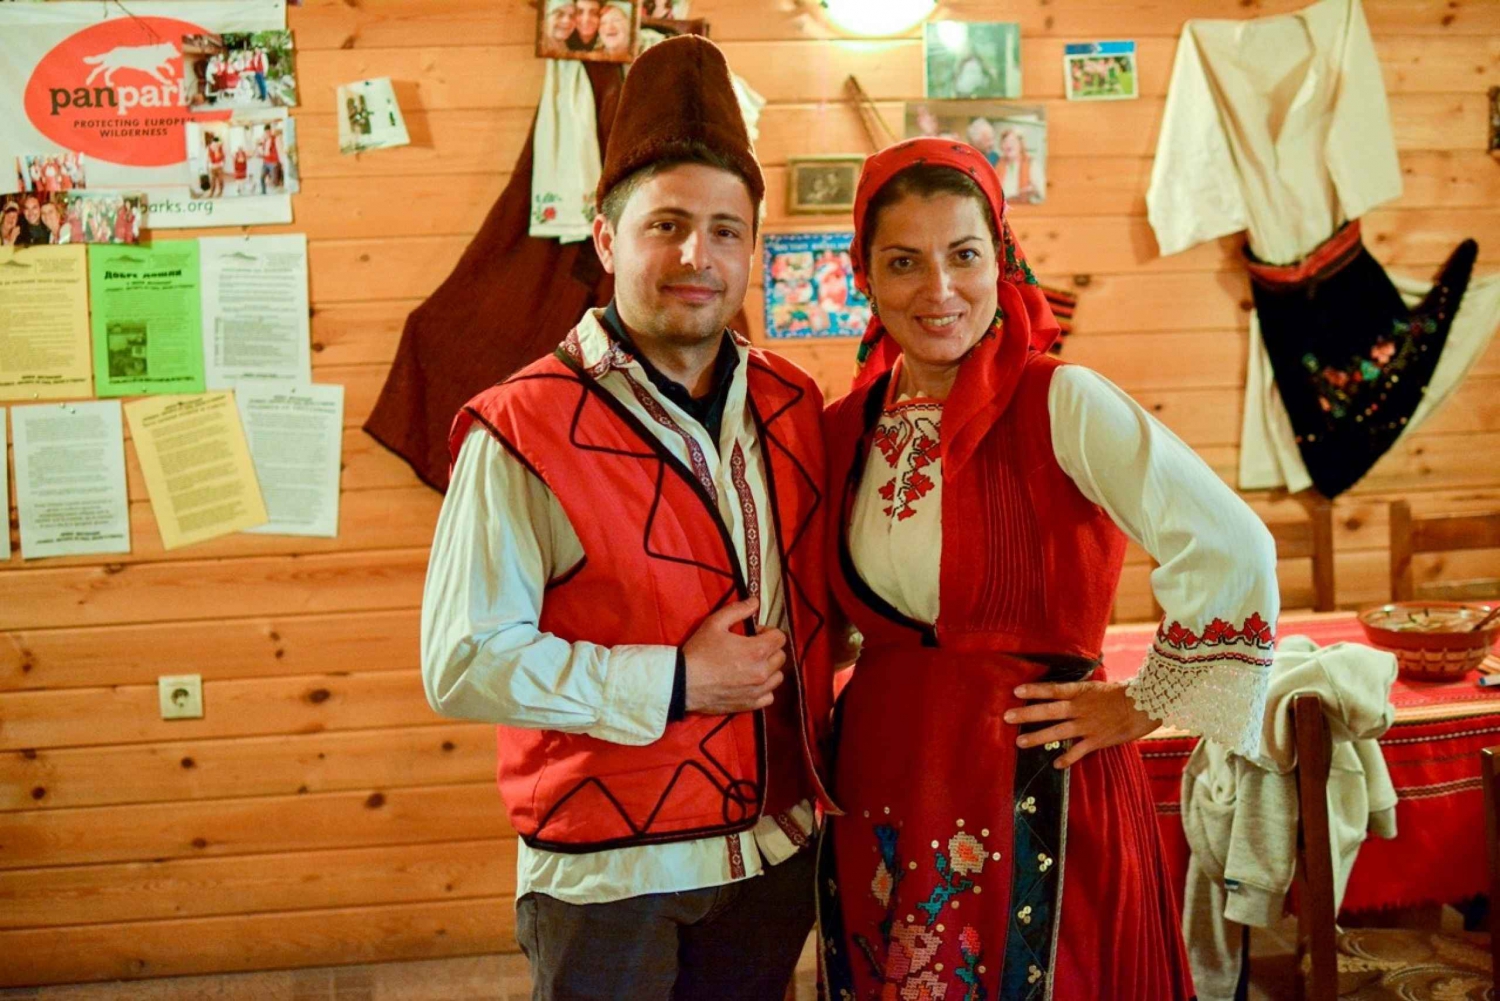 Gorno Draglishte: Lokal folkloreoplevelse med smagning af mad